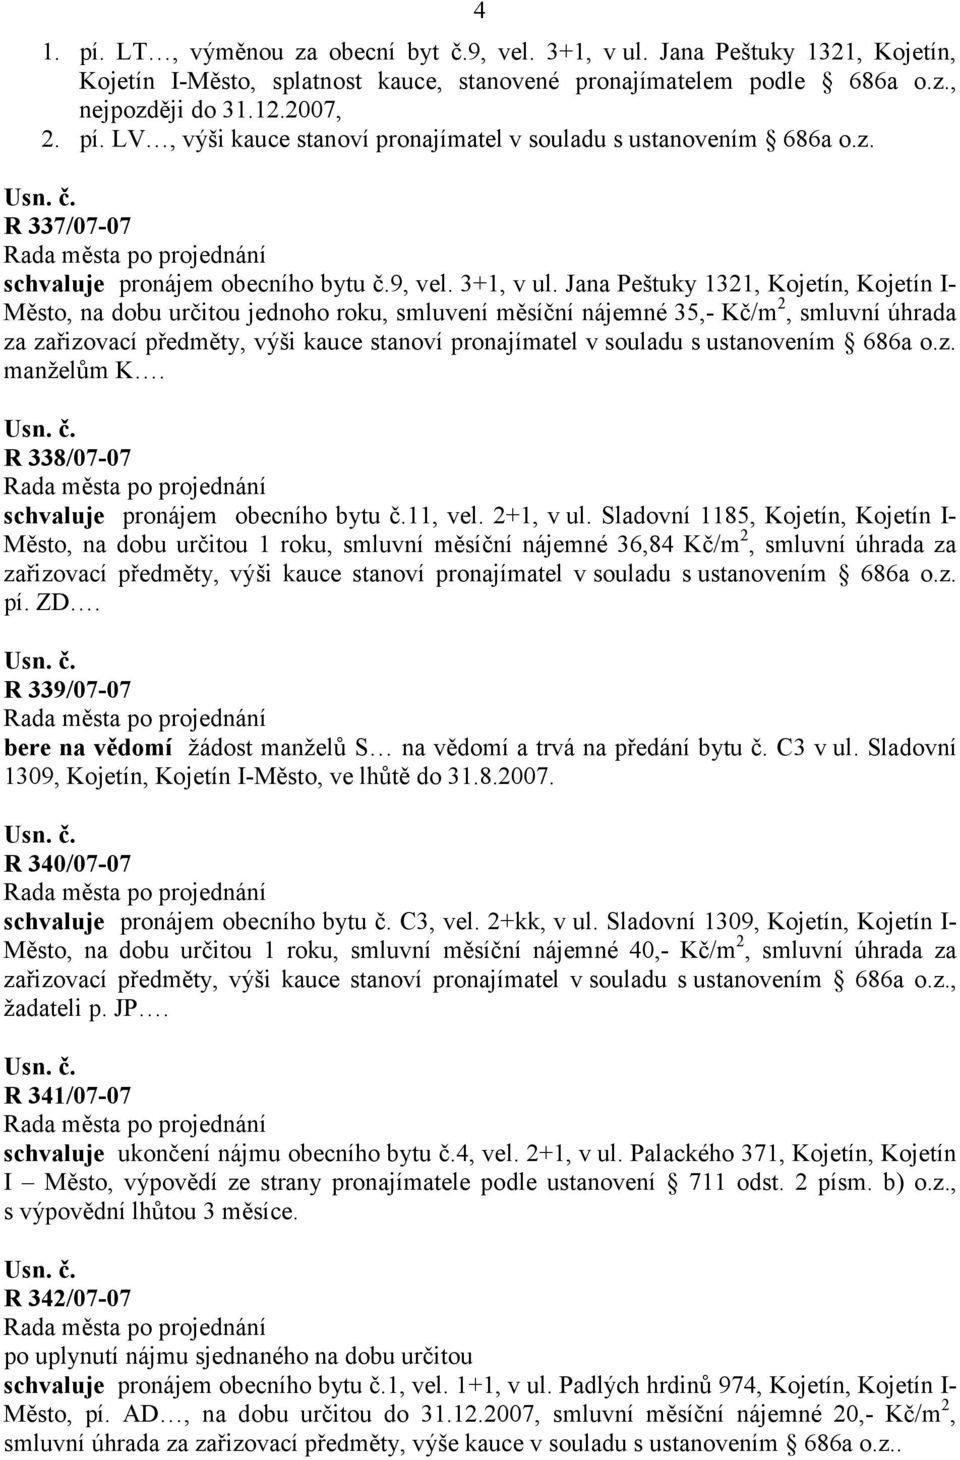 Jana Peštuky 1321, Kojetín, Kojetín I- Město, na dobu určitou jednoho roku, smluvení měsíční nájemné 35,- Kč/m 2, smluvní úhrada za zařizovací předměty, výši kauce stanoví pronajímatel v souladu s